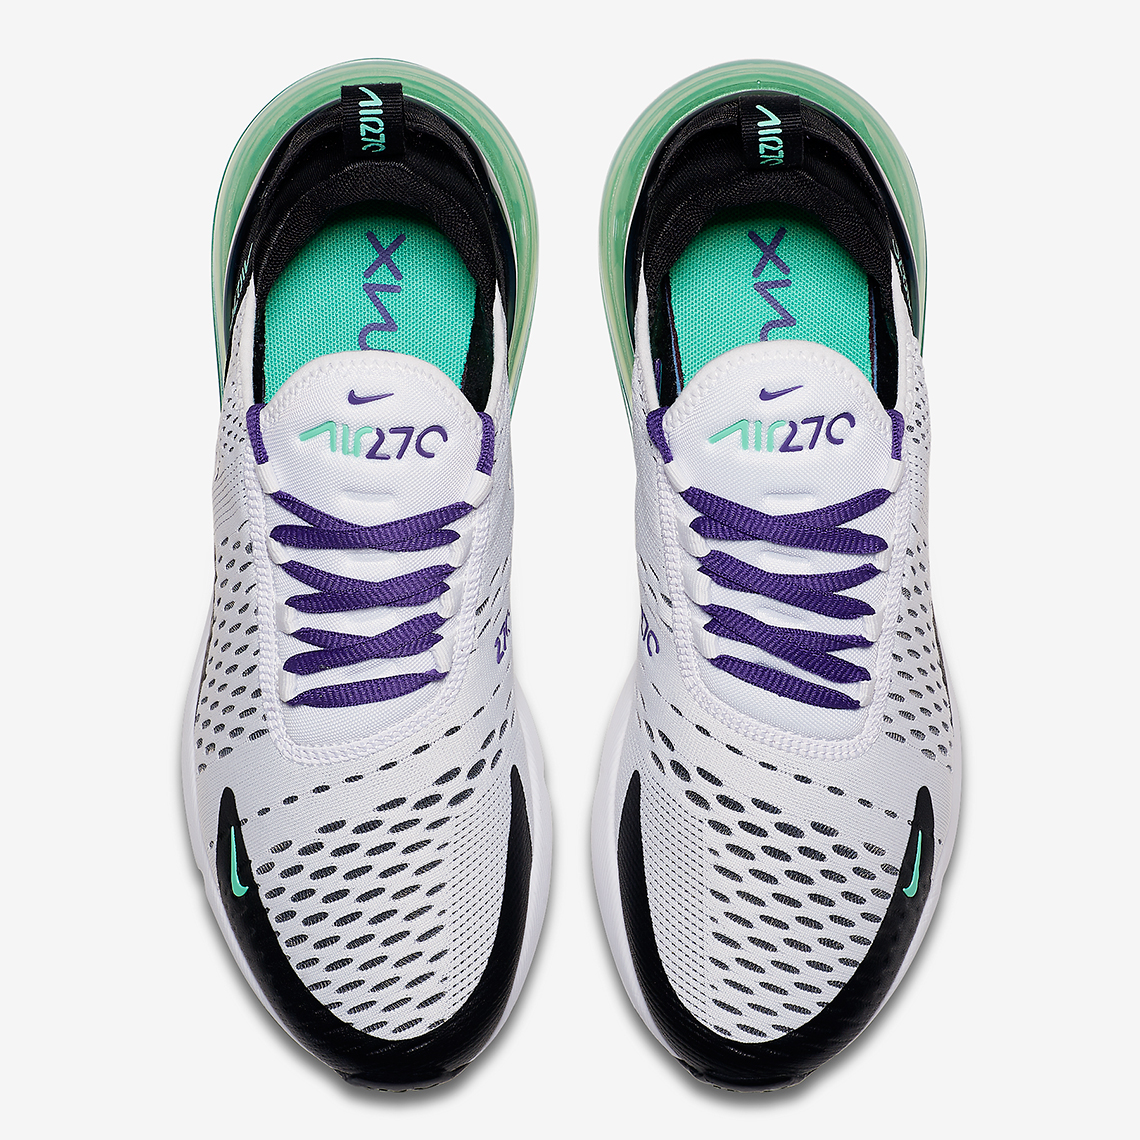 Nike Air Max270 Grape Wmns Coming Soon 6